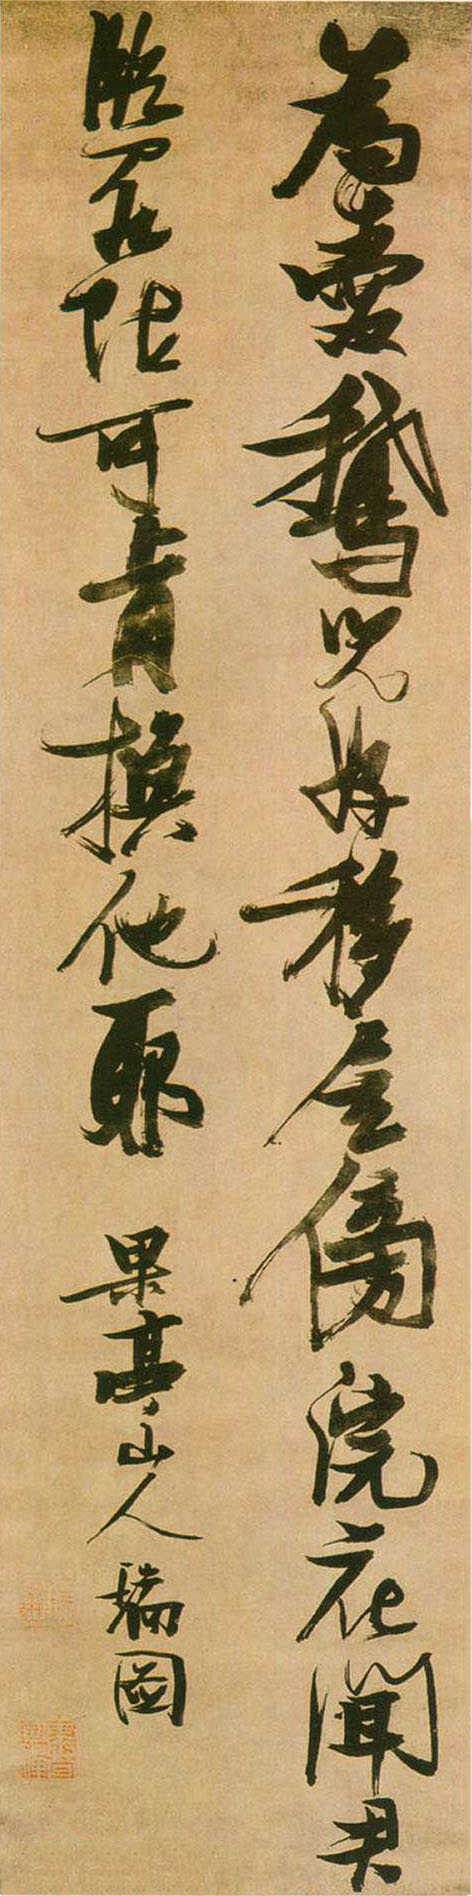 张瑞图行书《为爱鹅儿好诗轴》-首都博物馆藏 (图1)